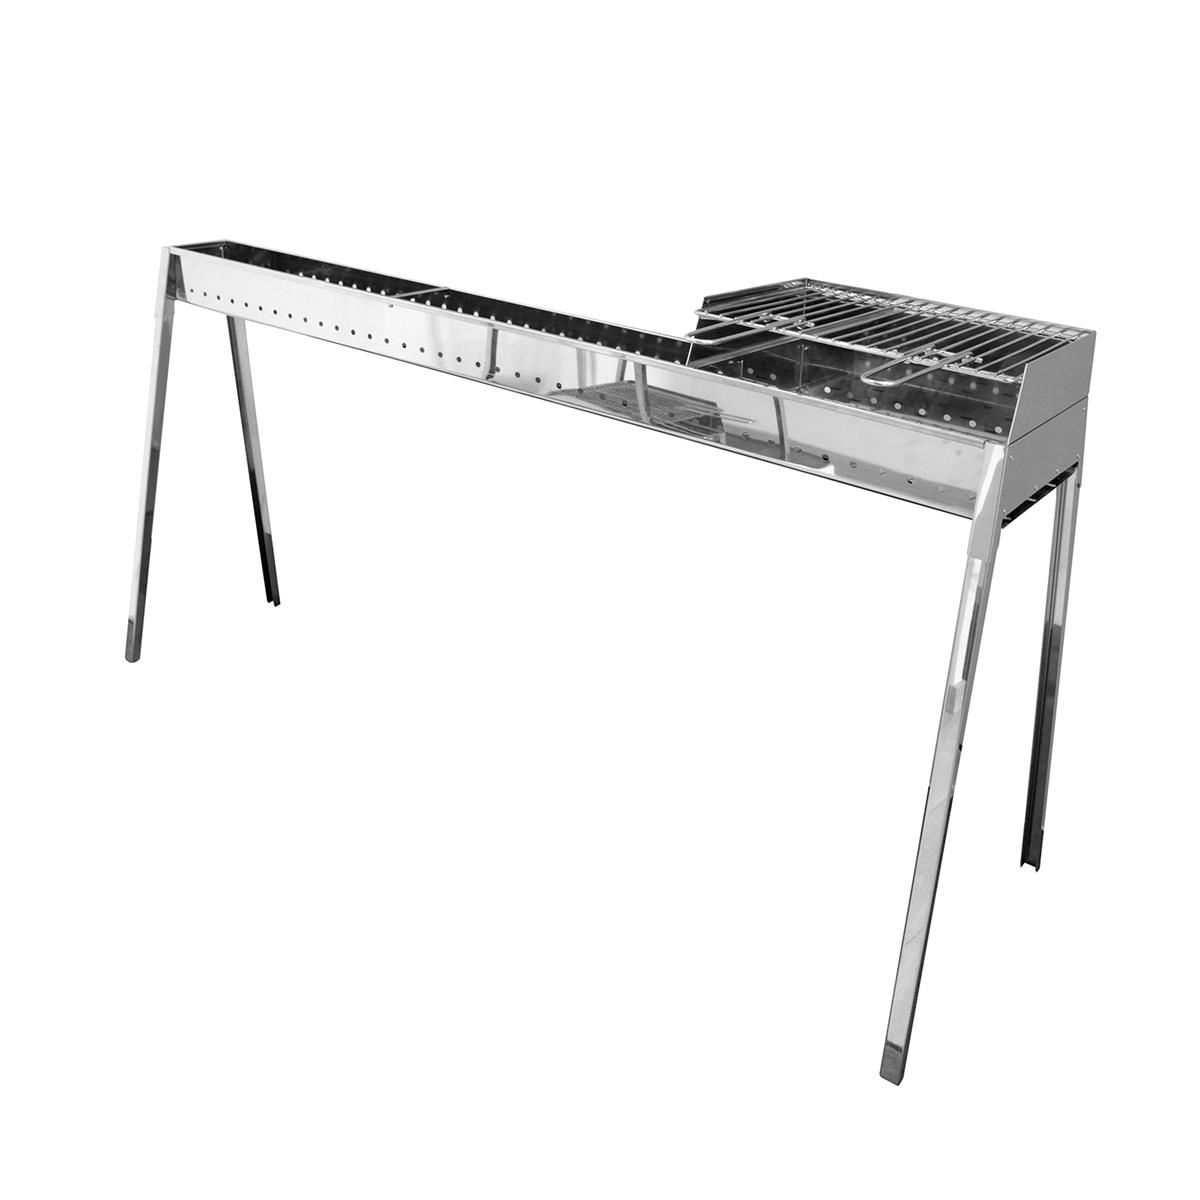 LISA - Cuiseur à brochettes grill Milano 80+40+ Kit d'accessoires pour cloison - Steel Line